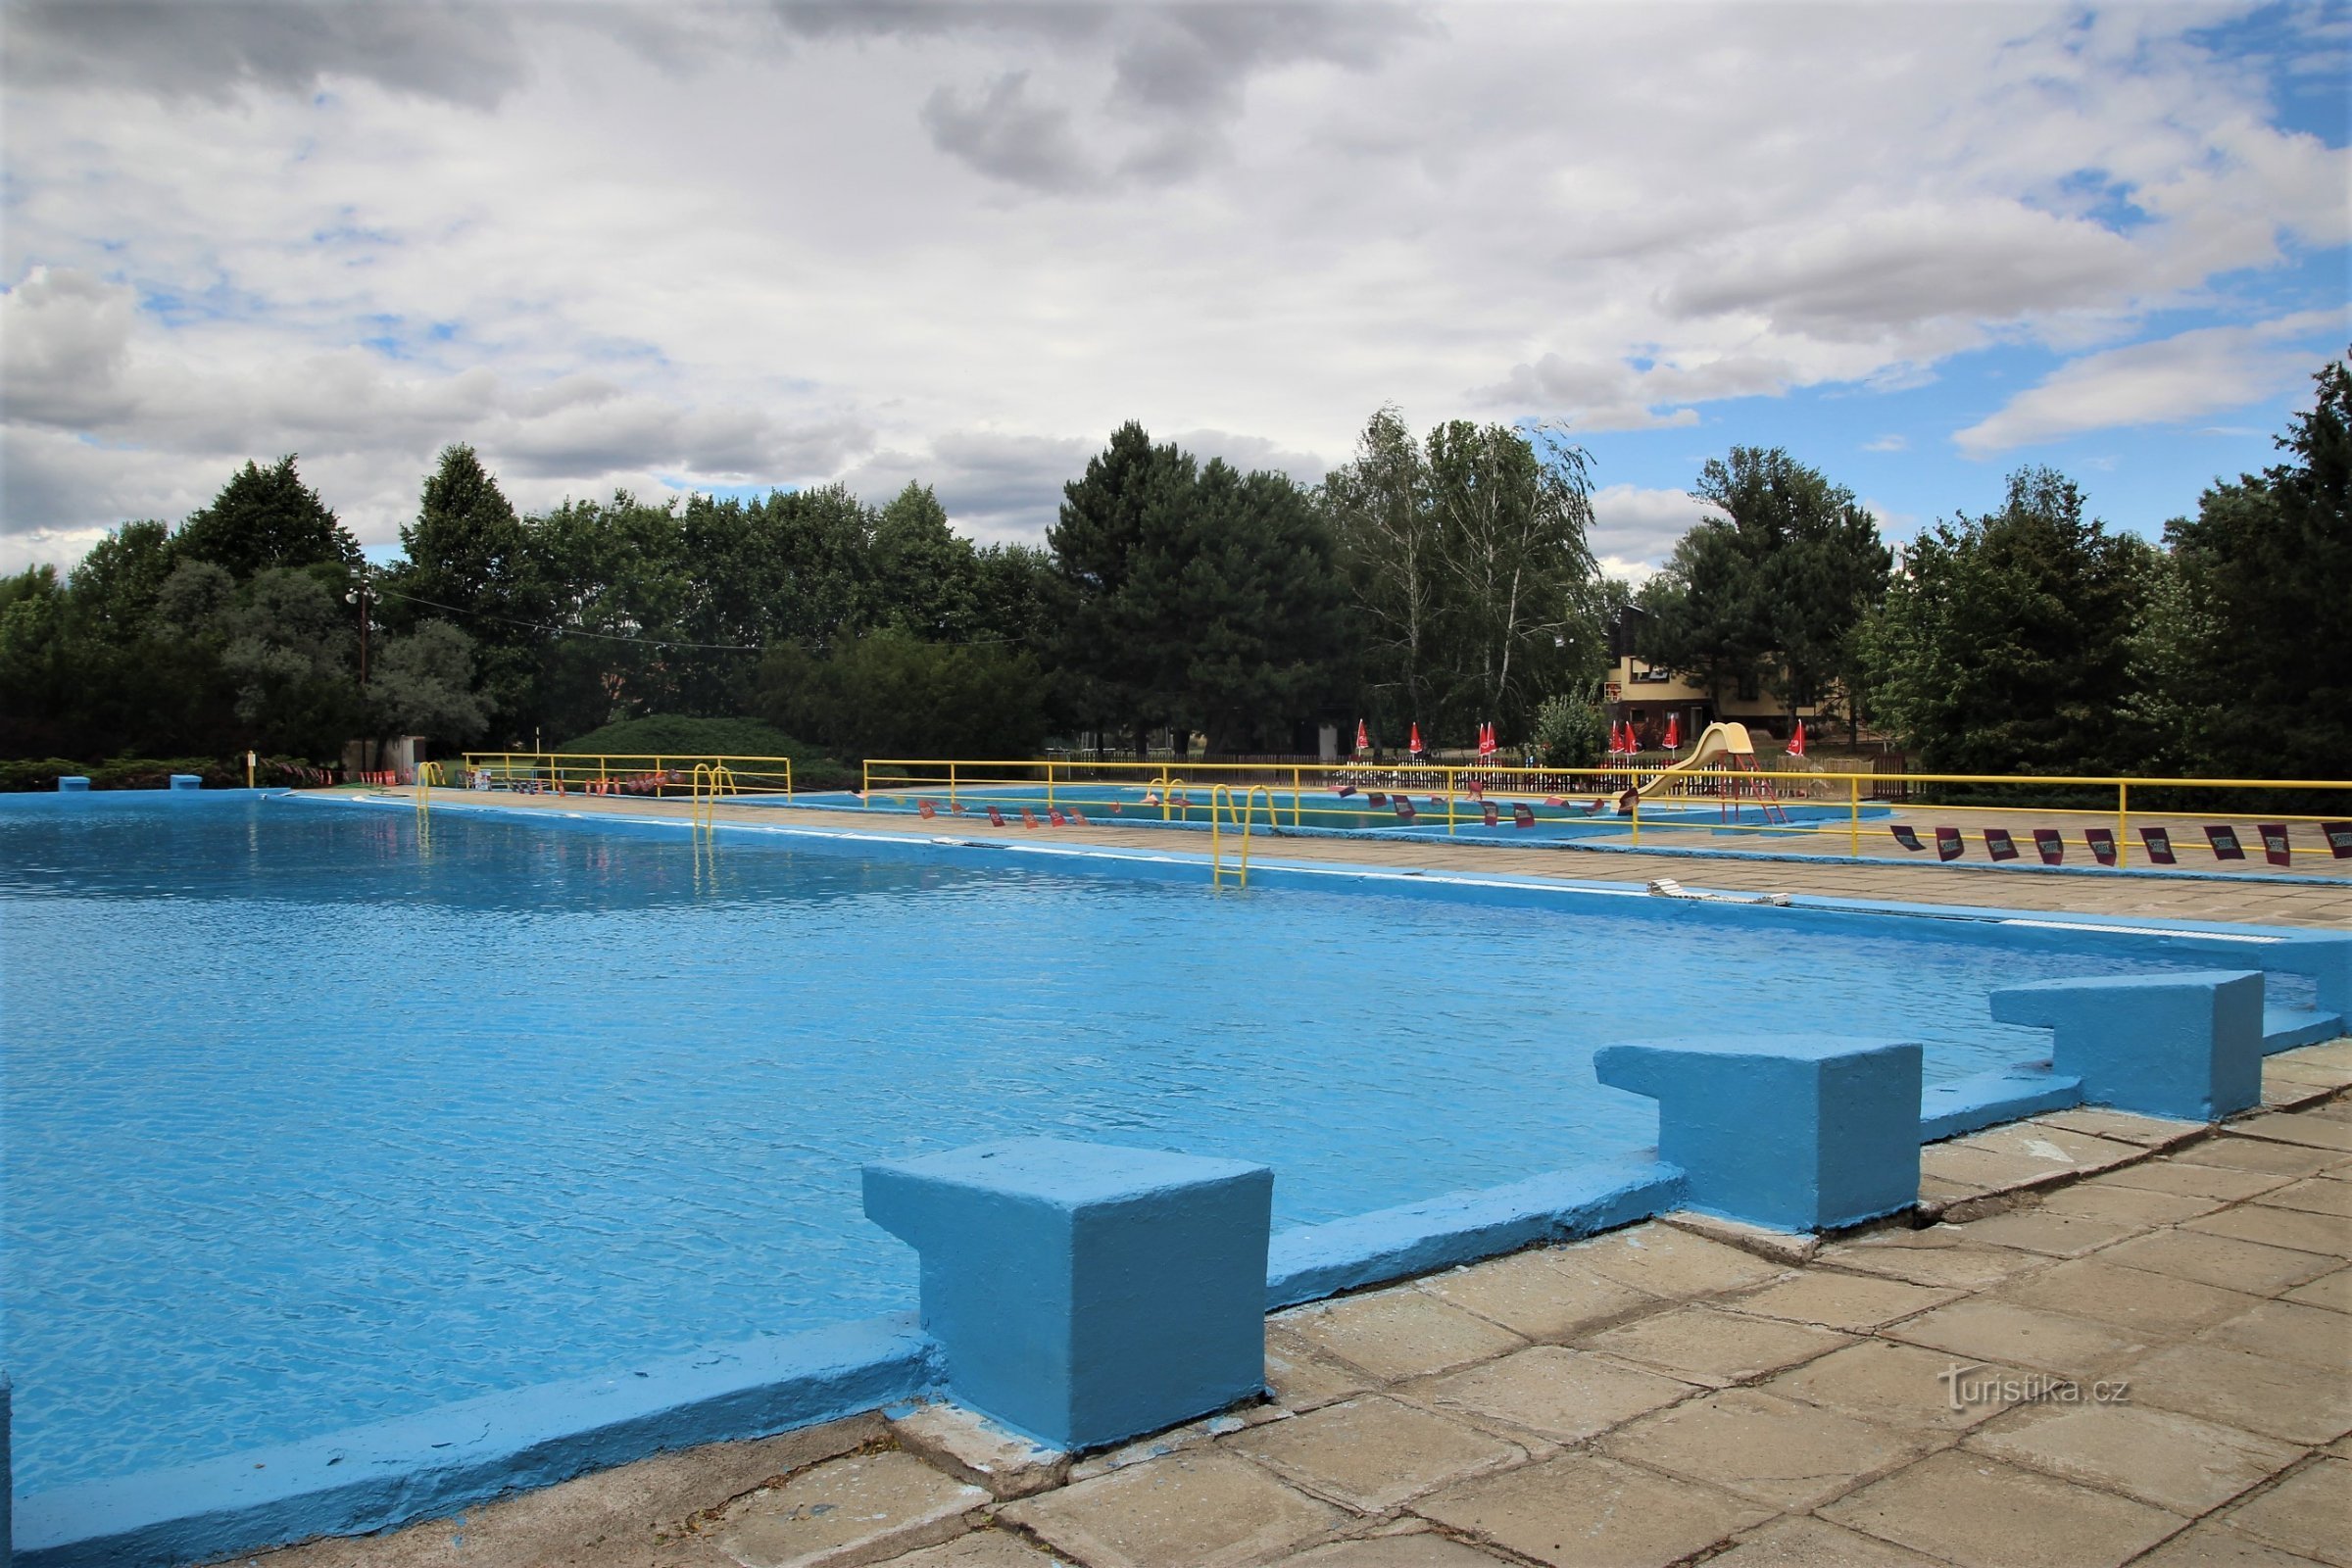 La piscina de la ciudad de Židlochovice antes de abrir en junio de 2017